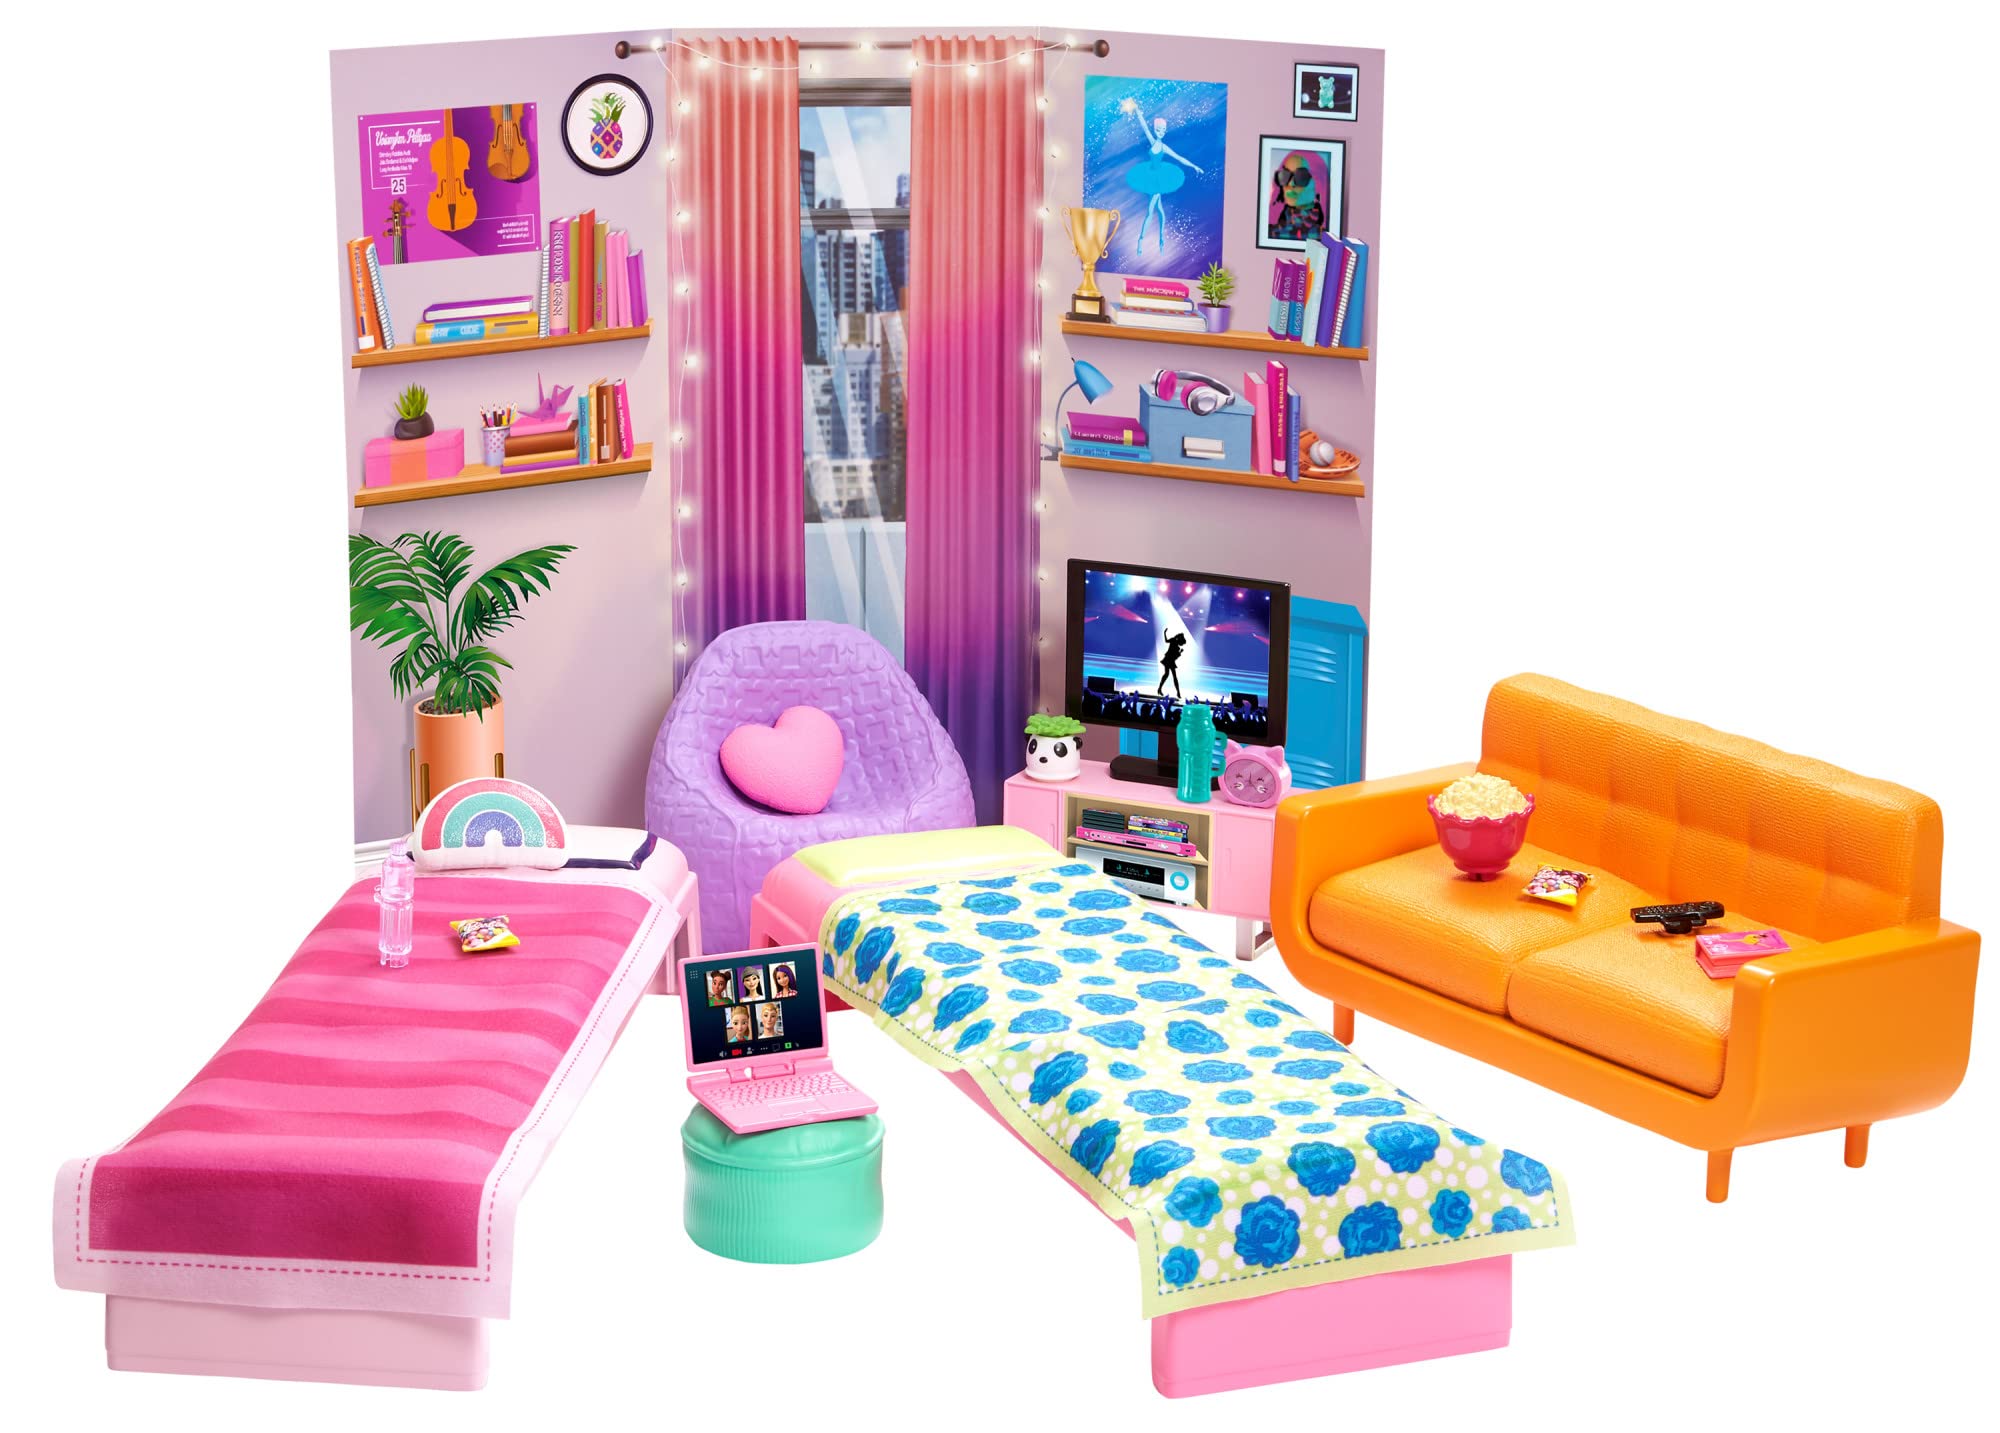 Trang trí barbie decor room phòng của bạn với phụ kiện Barbie độc đáo